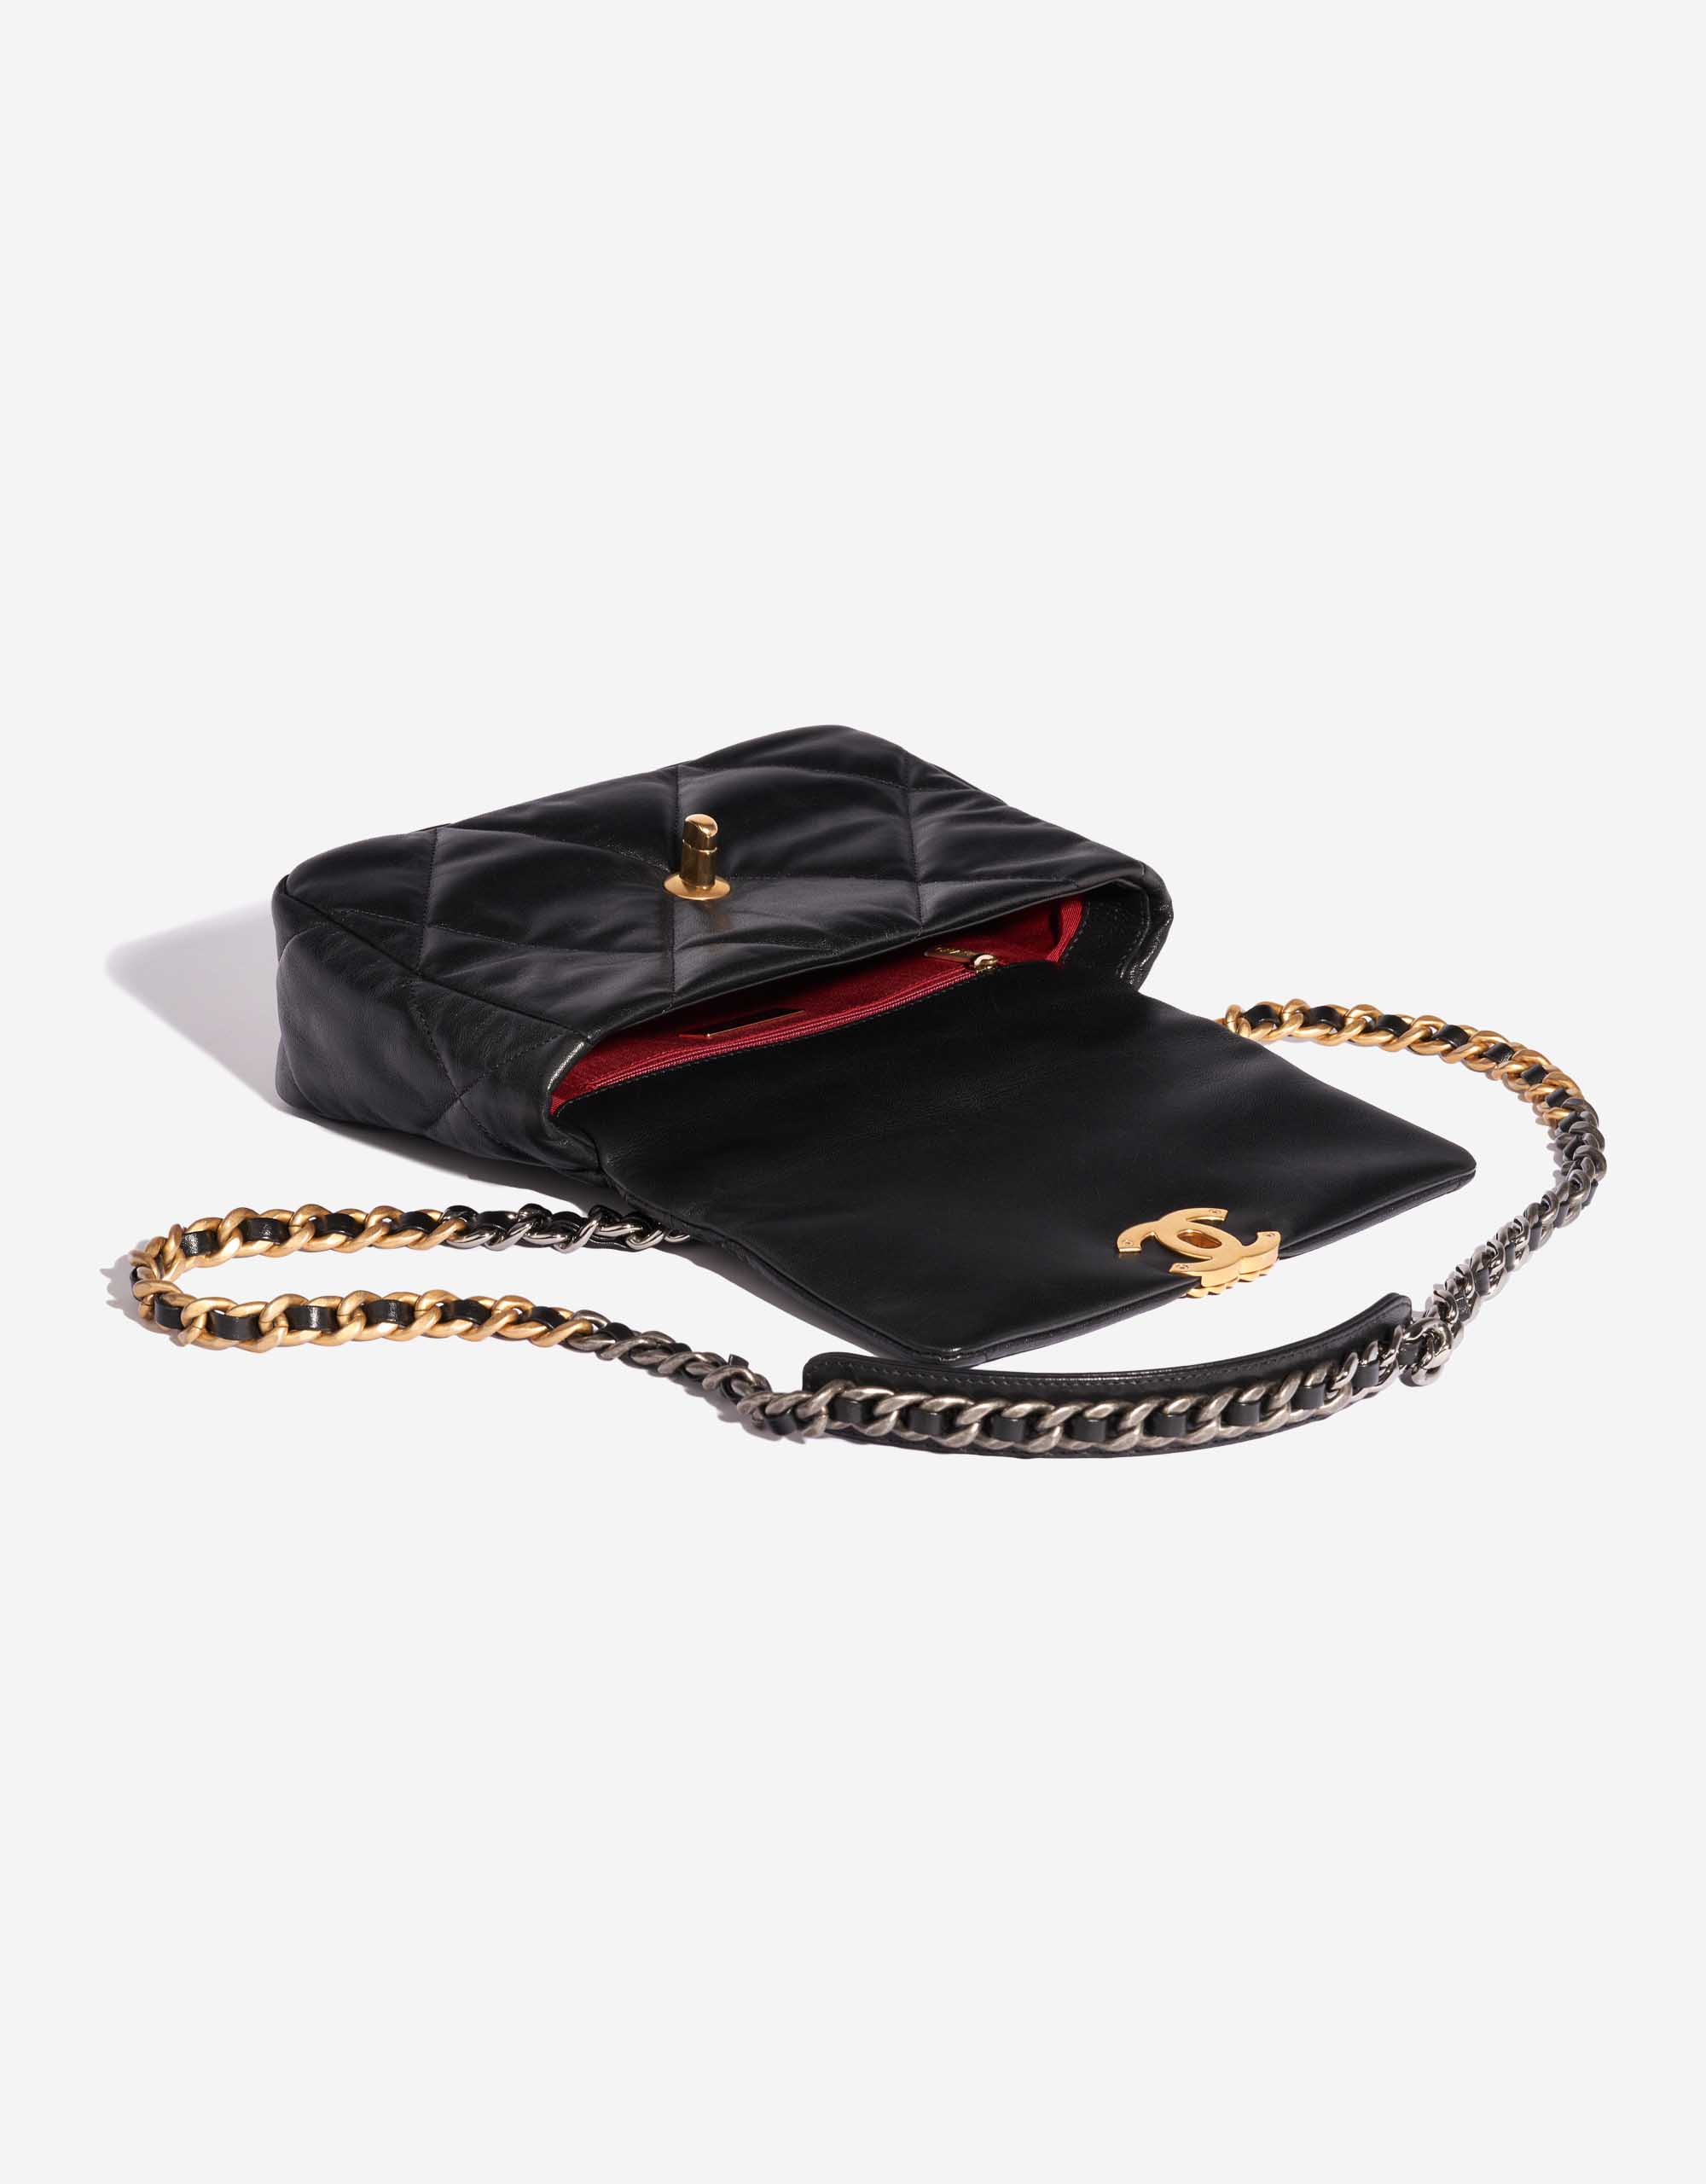 Pre-owned Chanel bag 19 Flap Bag Lamb Black Black Inside | Sell your designer bag on Saclab.com